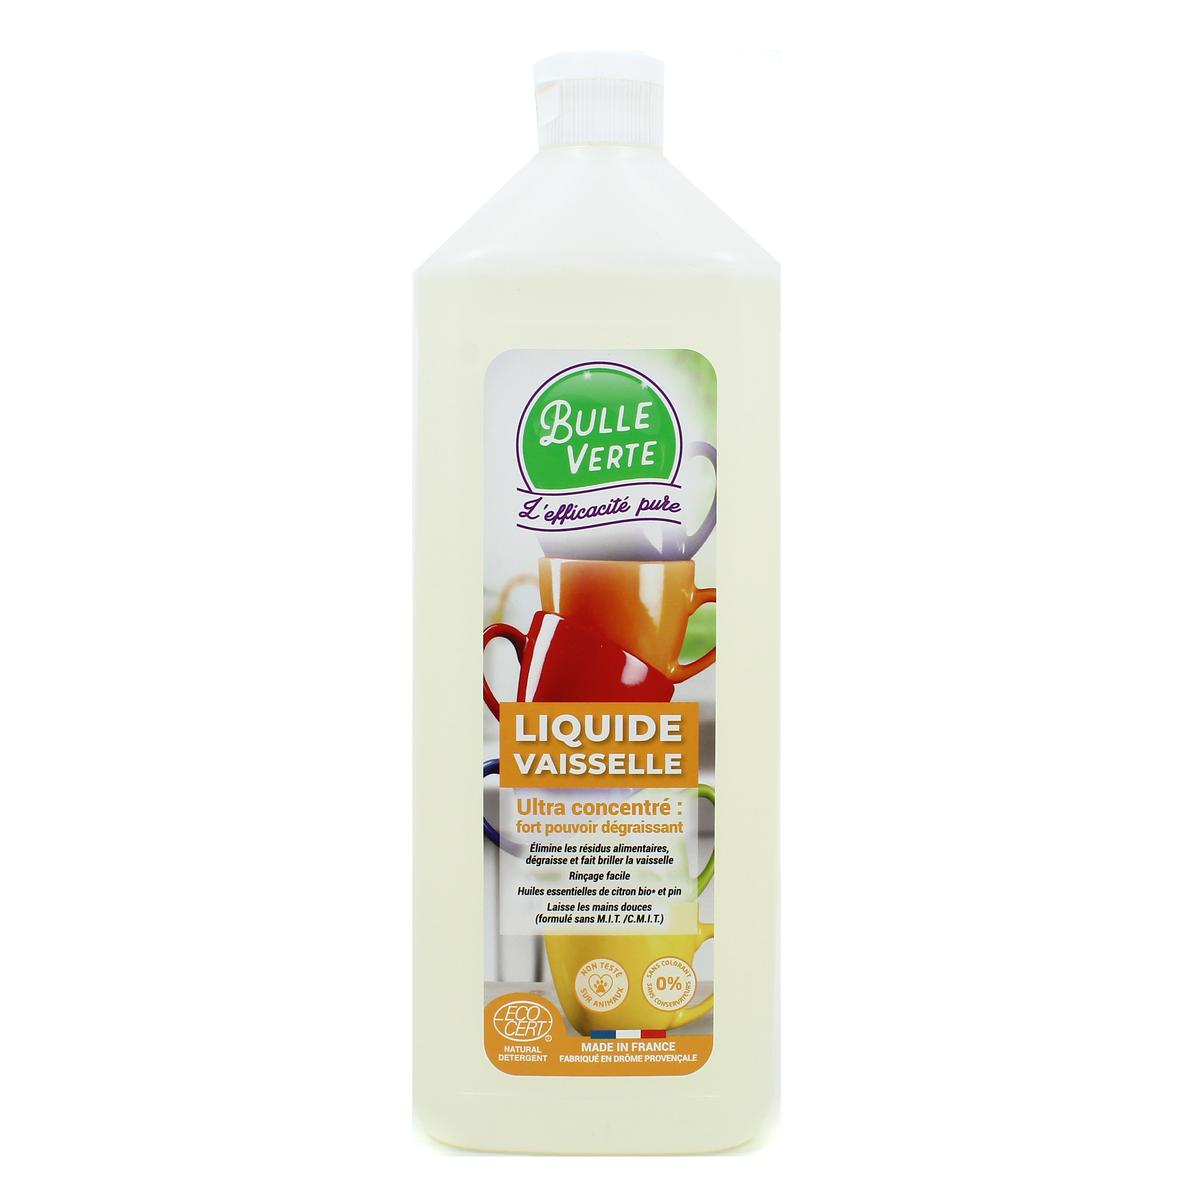 Fourmi Verte Liquide Vaisselle Bio 1L